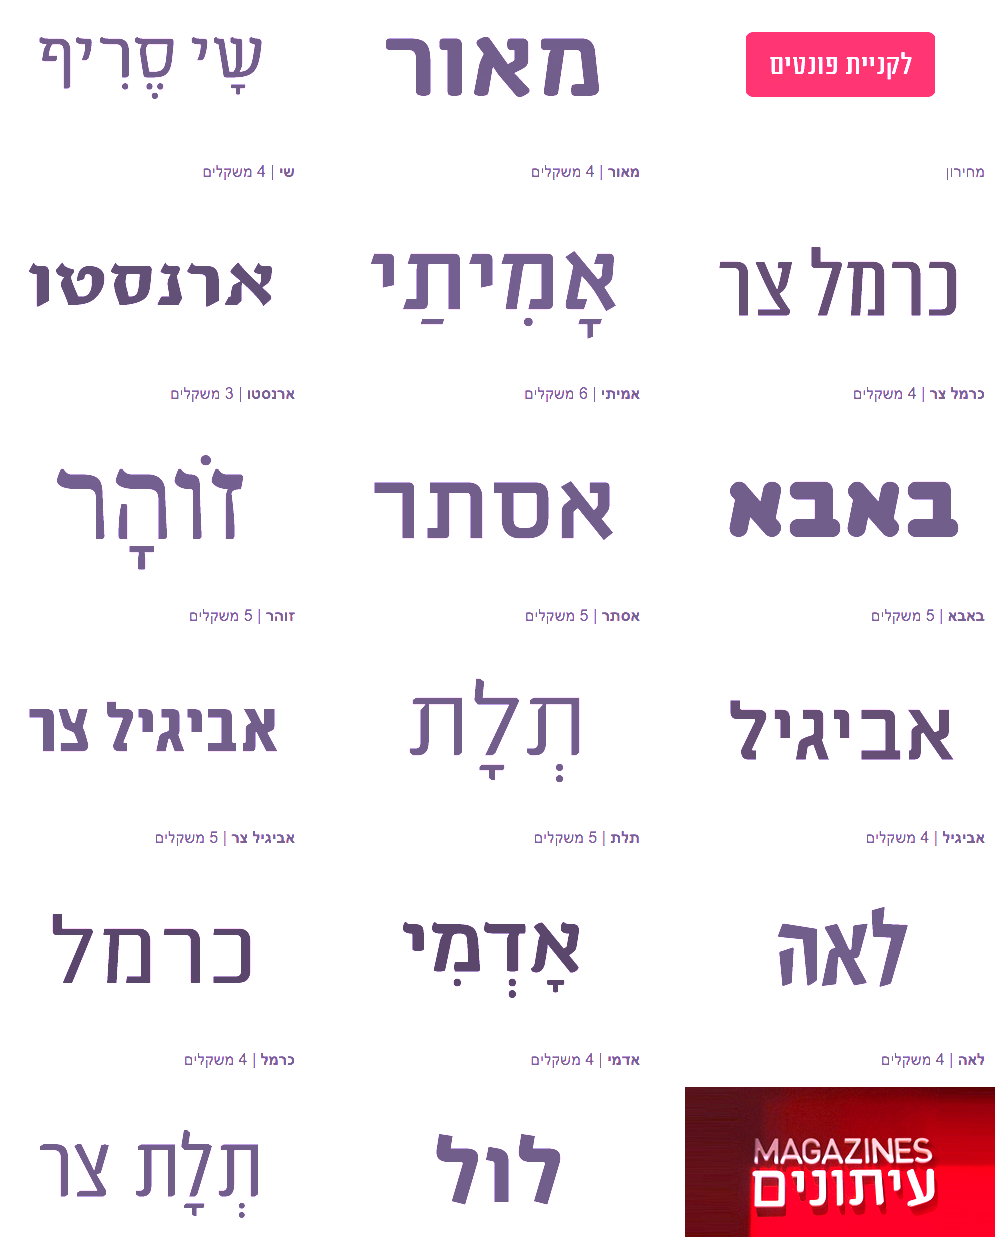 2015 in hebrew